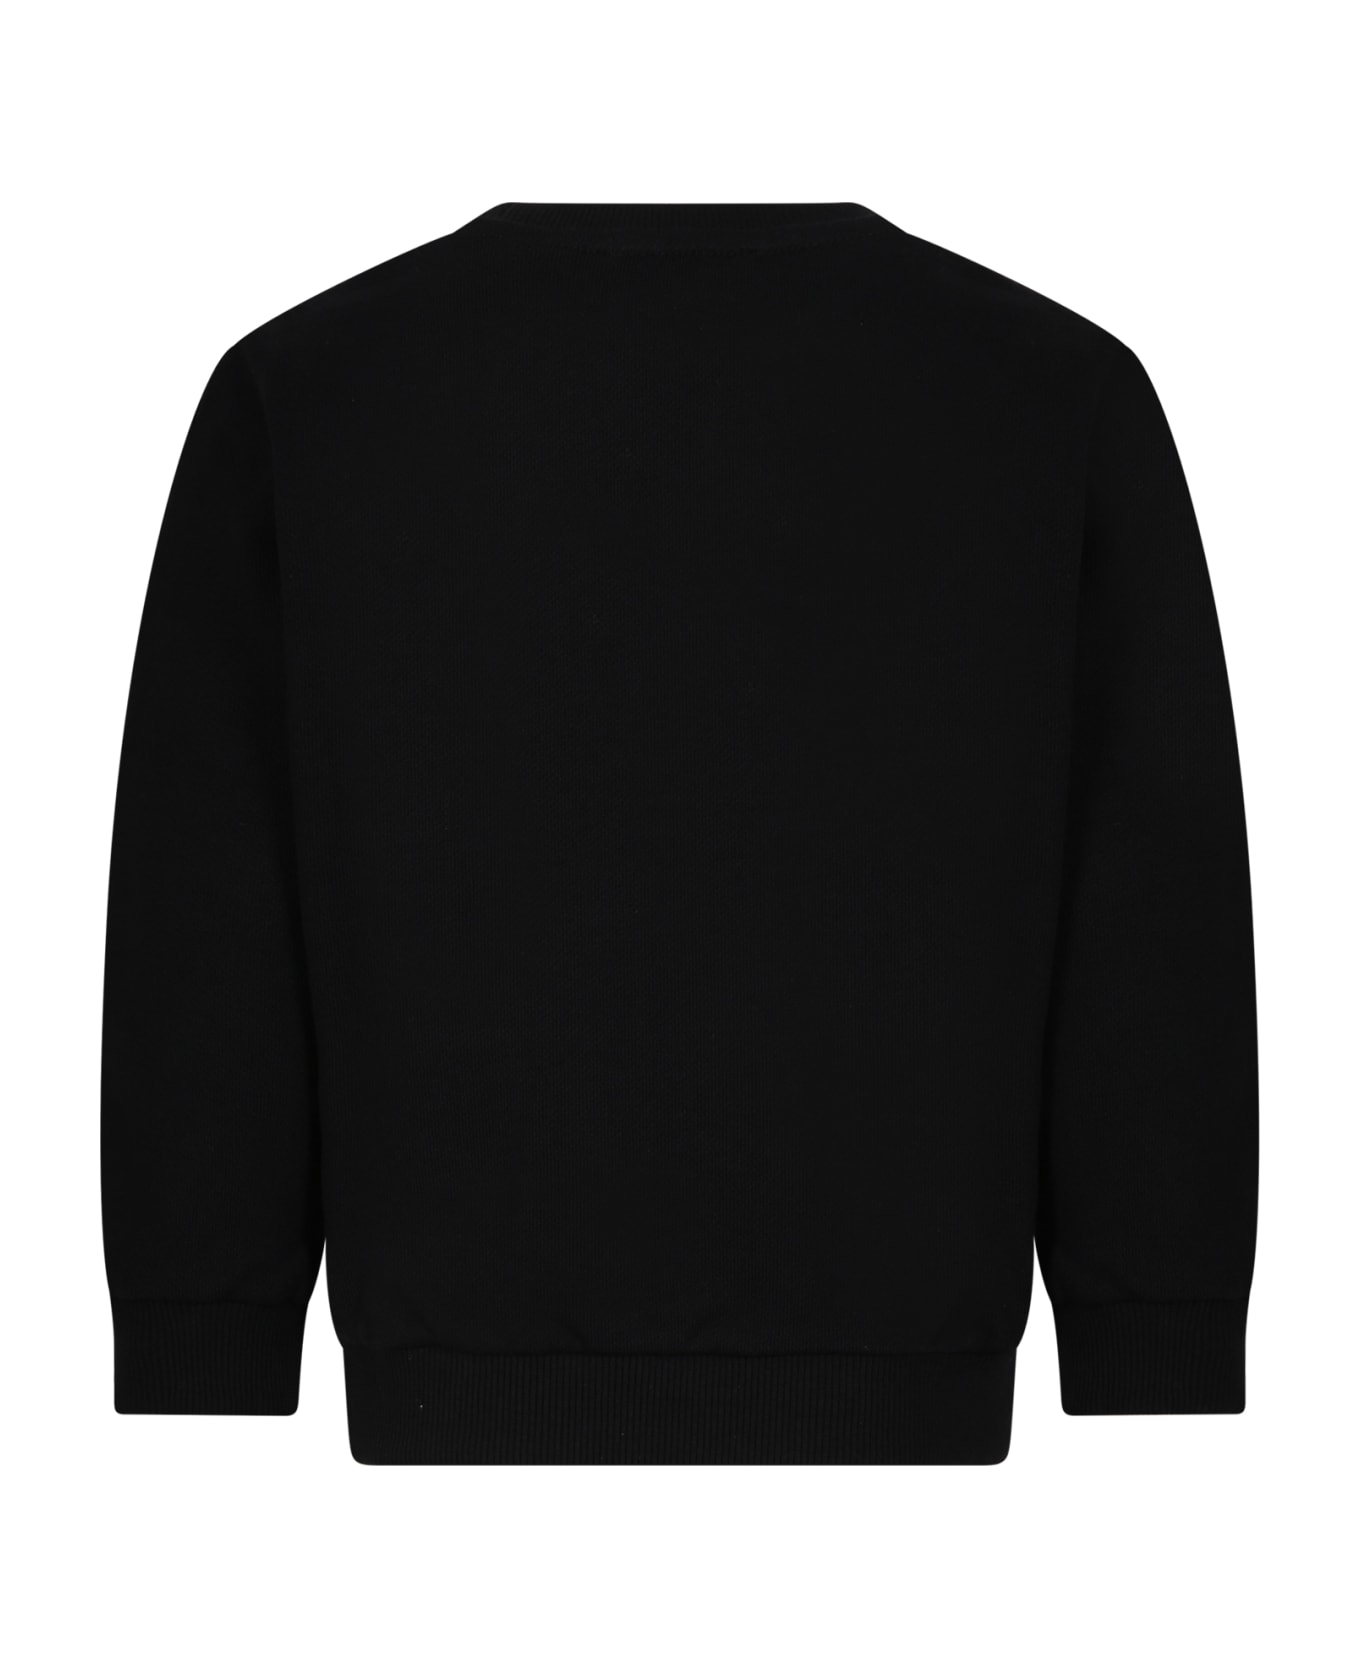 Balmain Black Sweatshirt With Iconic Metallic Logo For Girl - Black